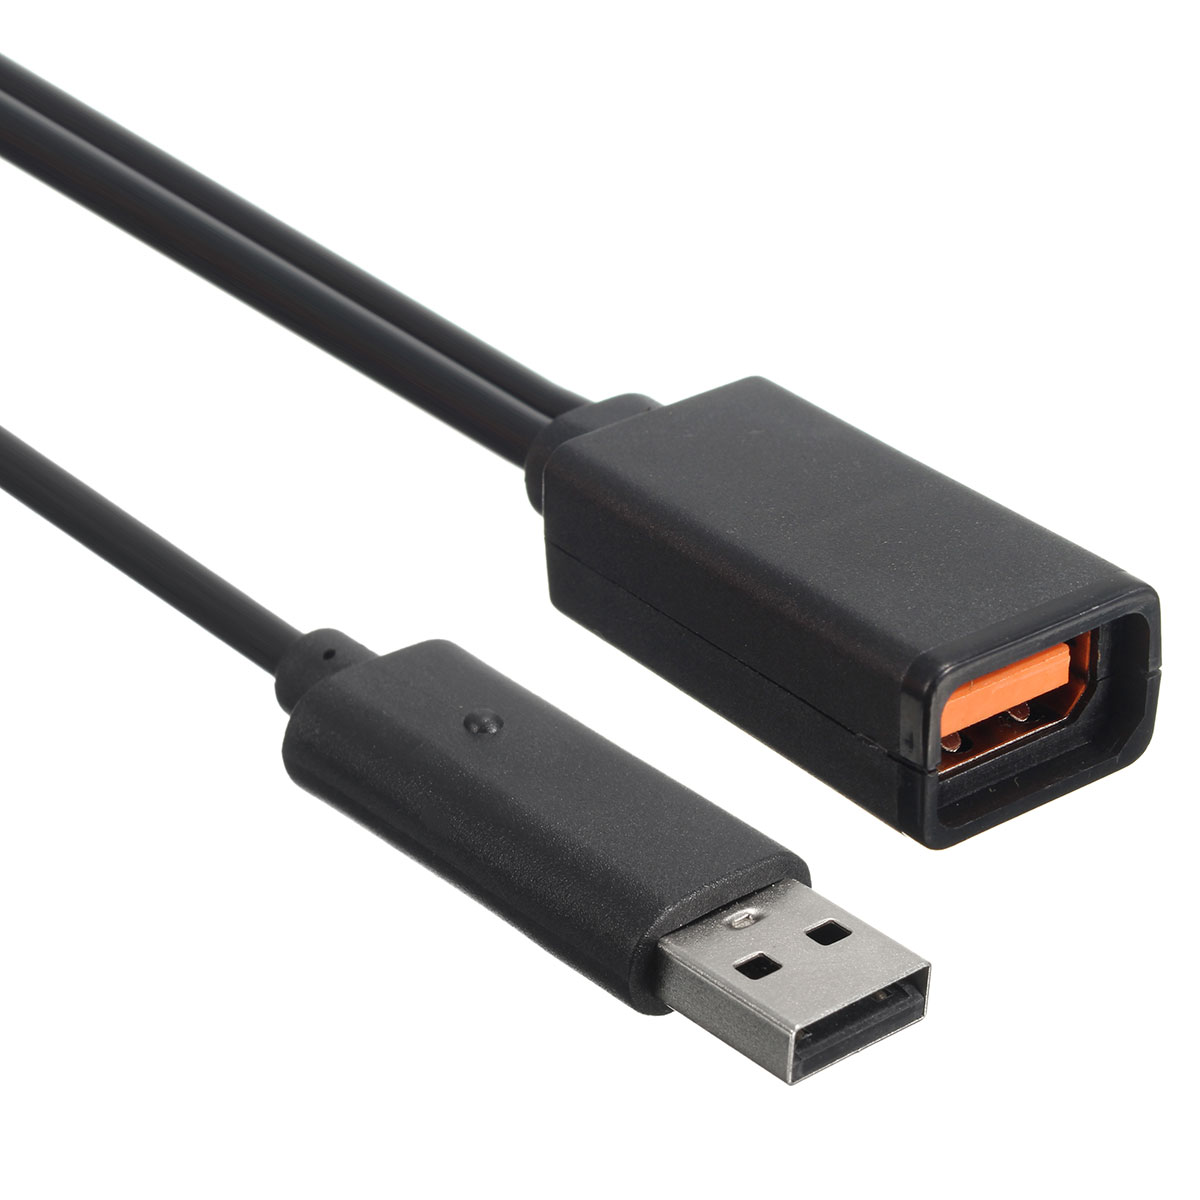 2.3m USB AC Adapter Power Supply Cable for Xbox 360 Kinect Sensor EU/US Plug 24